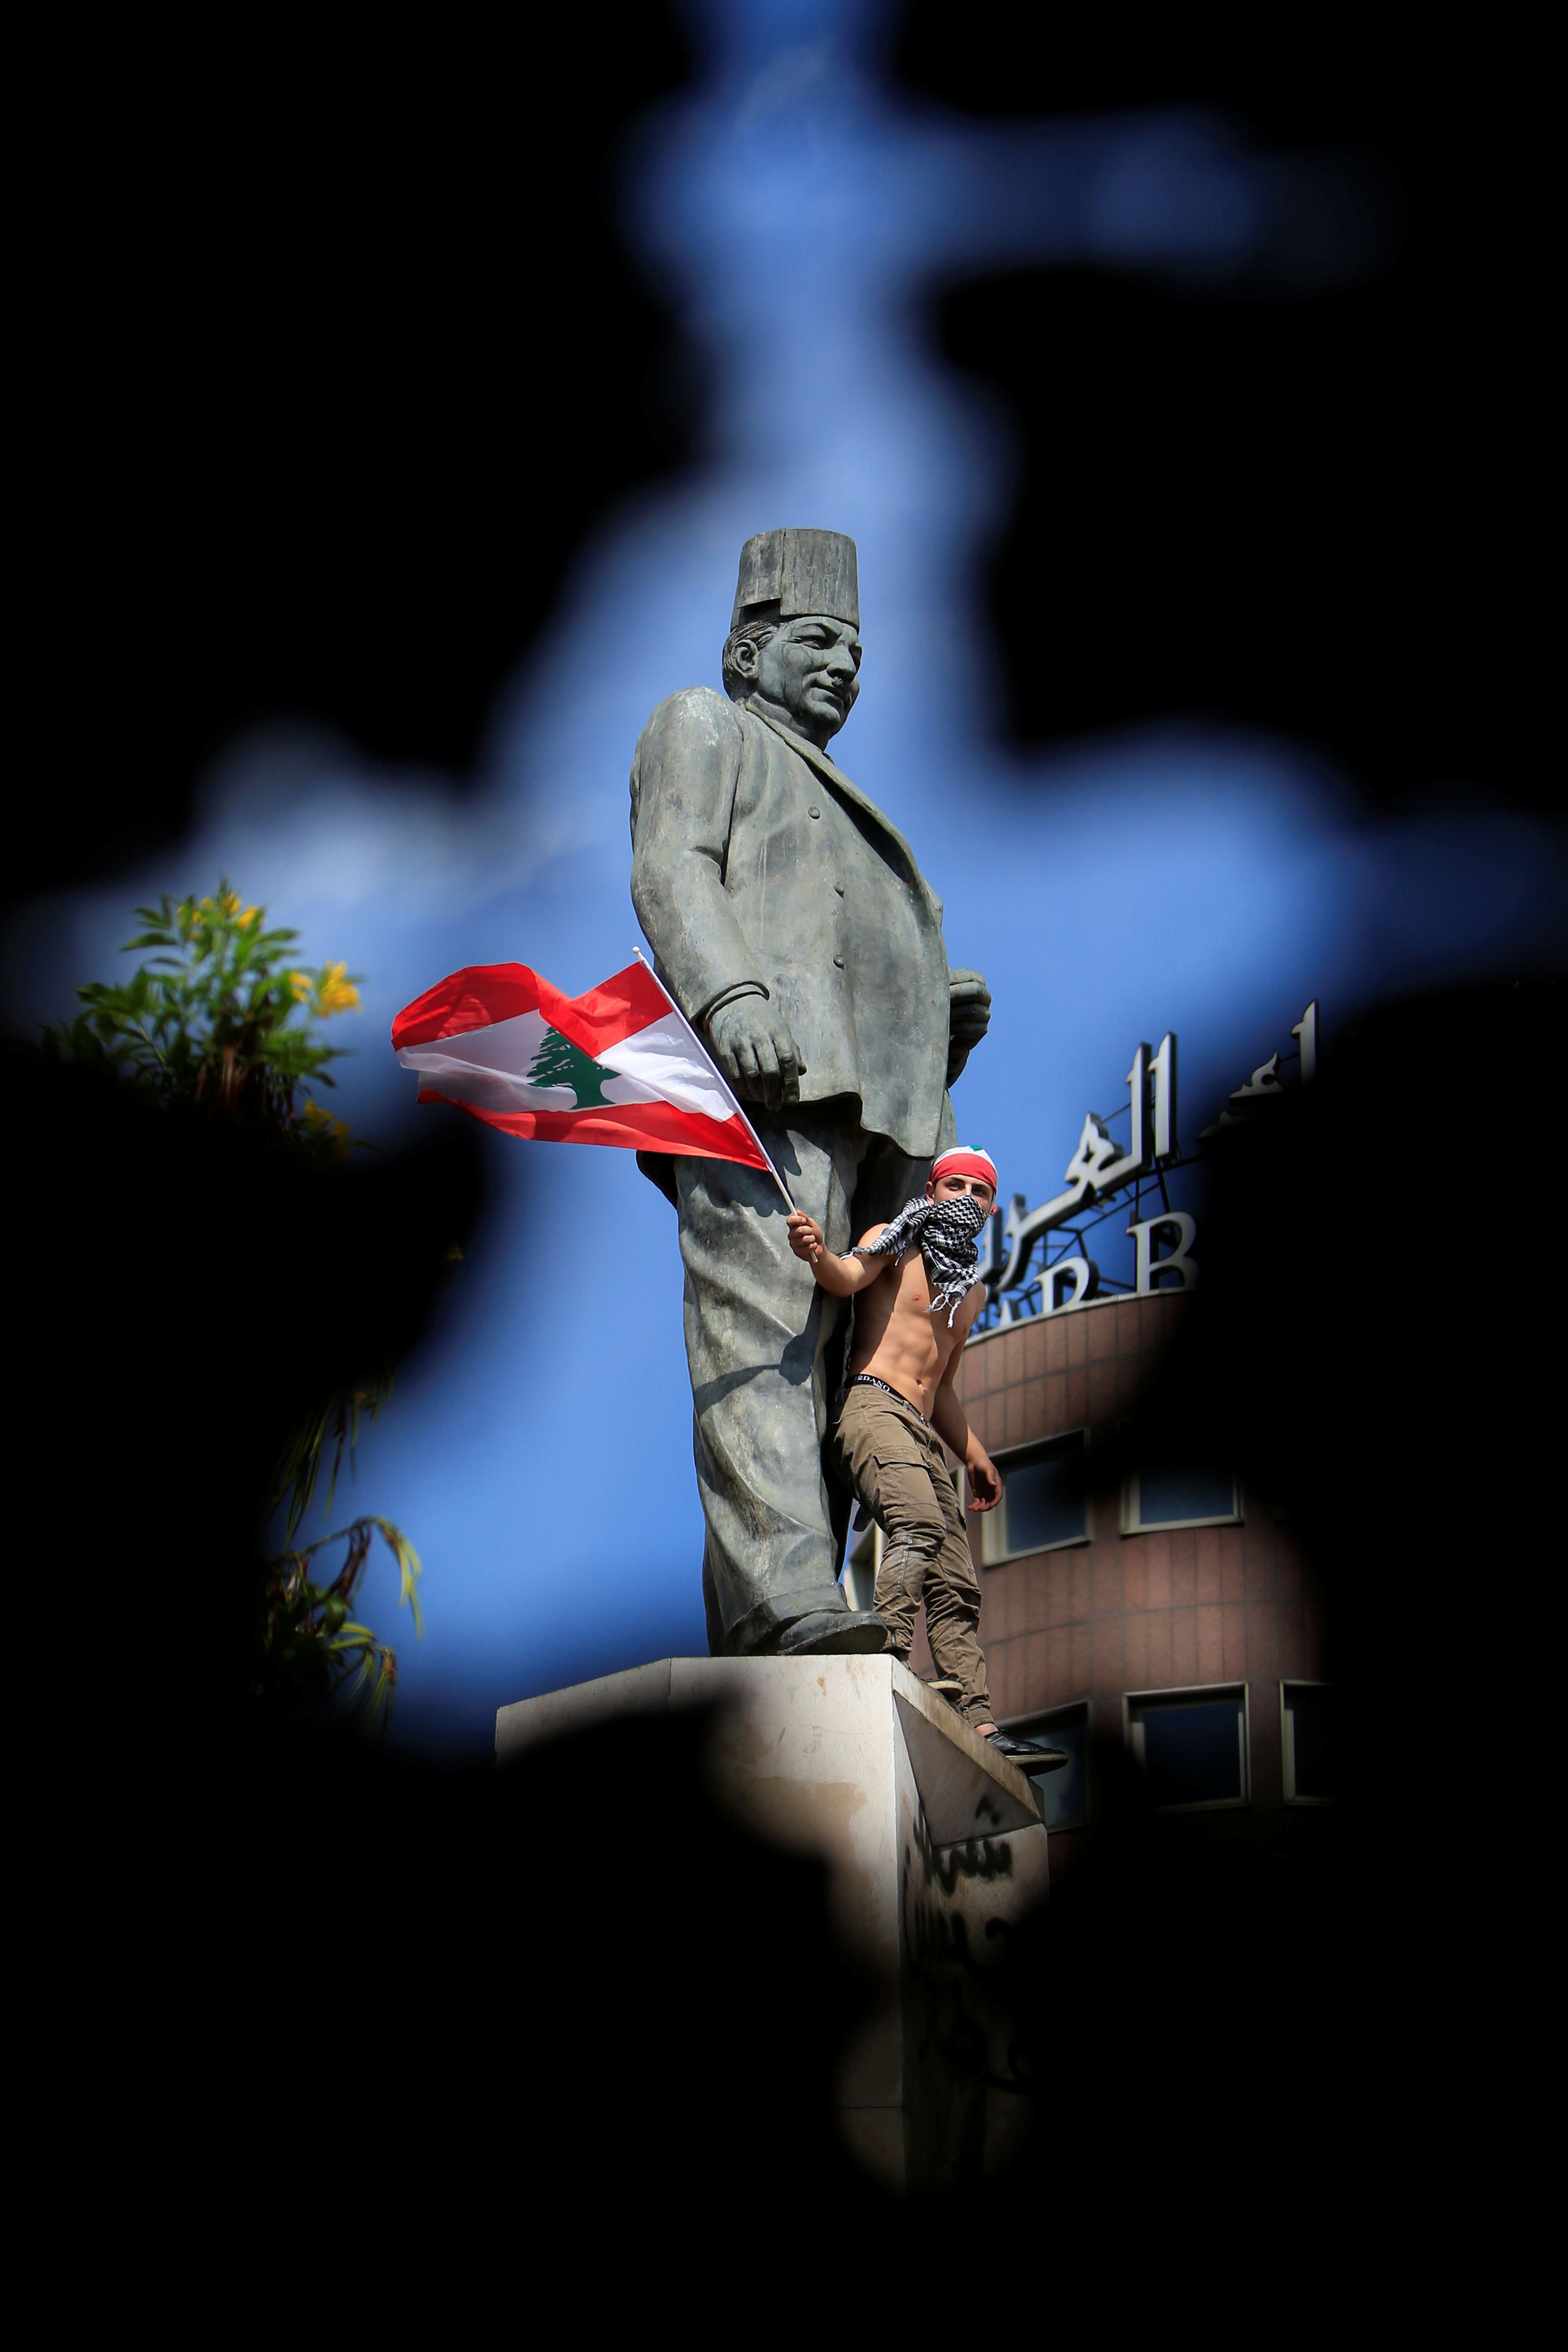 متظاهر يلوح بعلم وطني وهو يقف في تمثال رياض الصلح